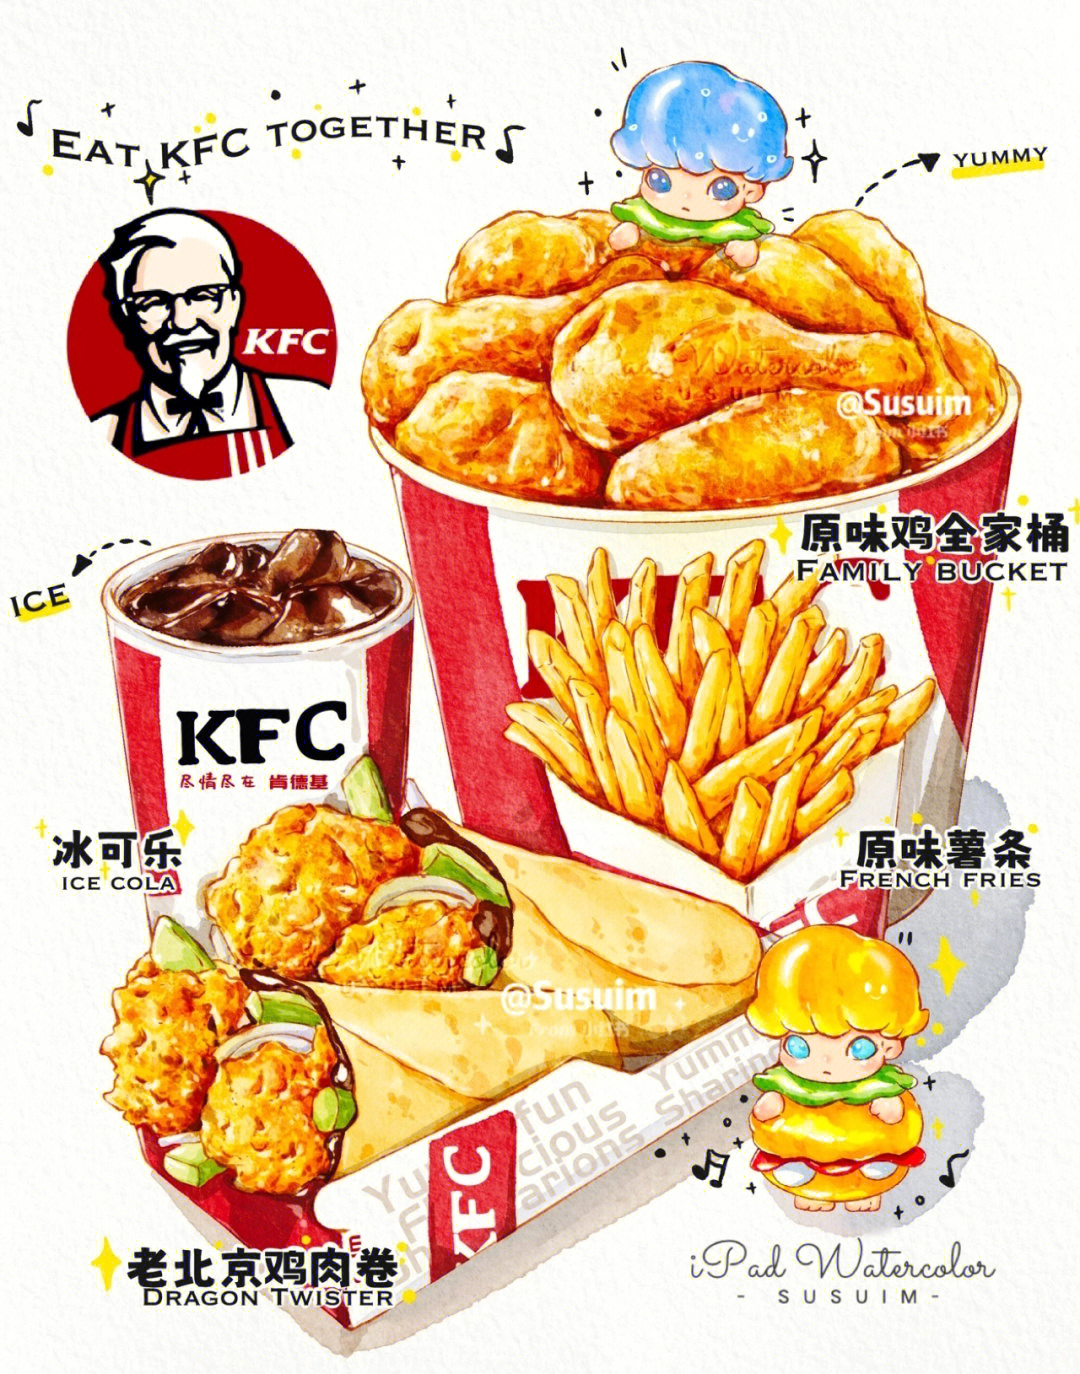 上海人民什么时候能吃到肯德基啊01呜呜画饼充饥!